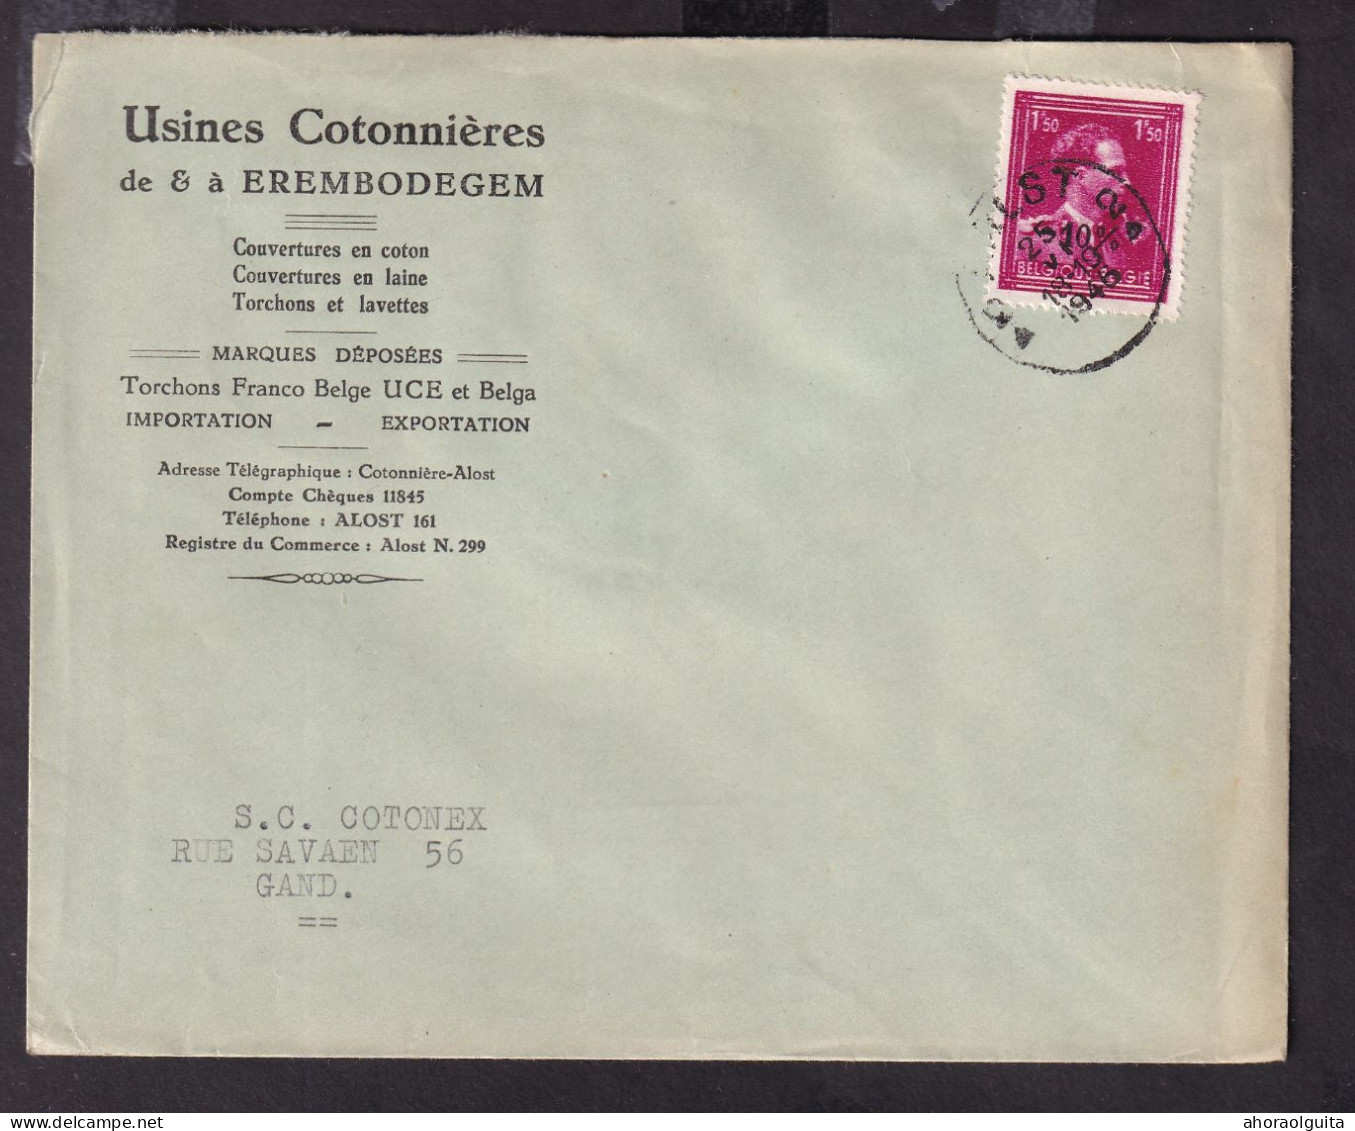 DDGG 149 -- Enveloppe TP Moins 10 % Surcharge Typo AALST 1946 - Entete Usines Cotonnières De EREMBODEGEM - 1946 -10 %